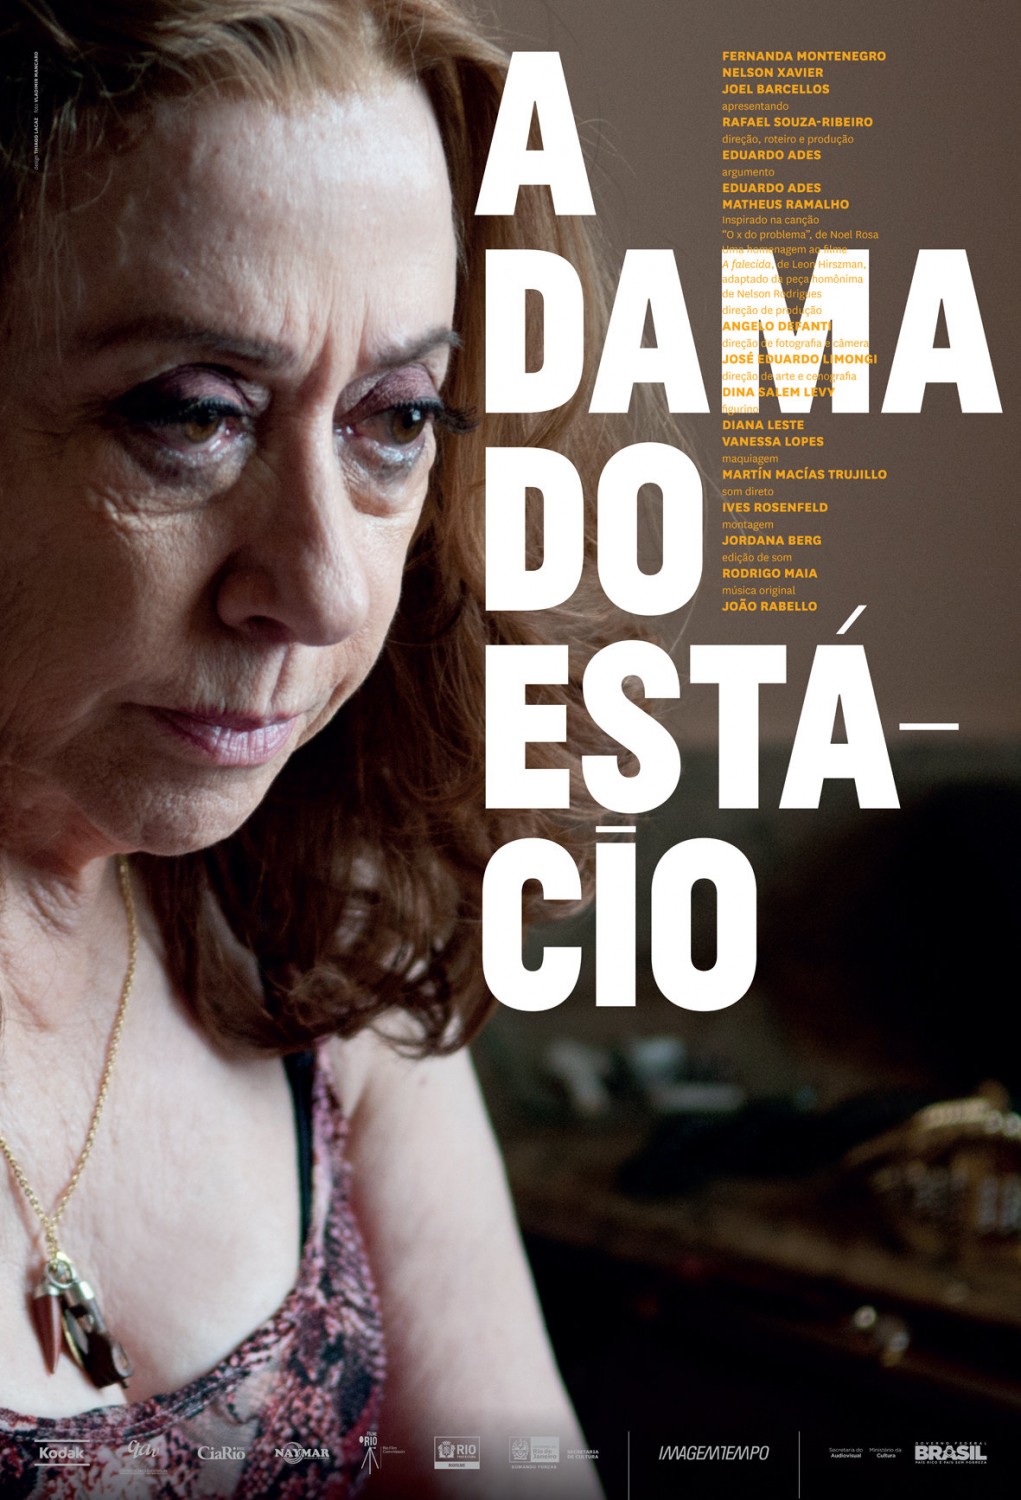 Extra Large Movie Poster Image for A Dama do Estcio